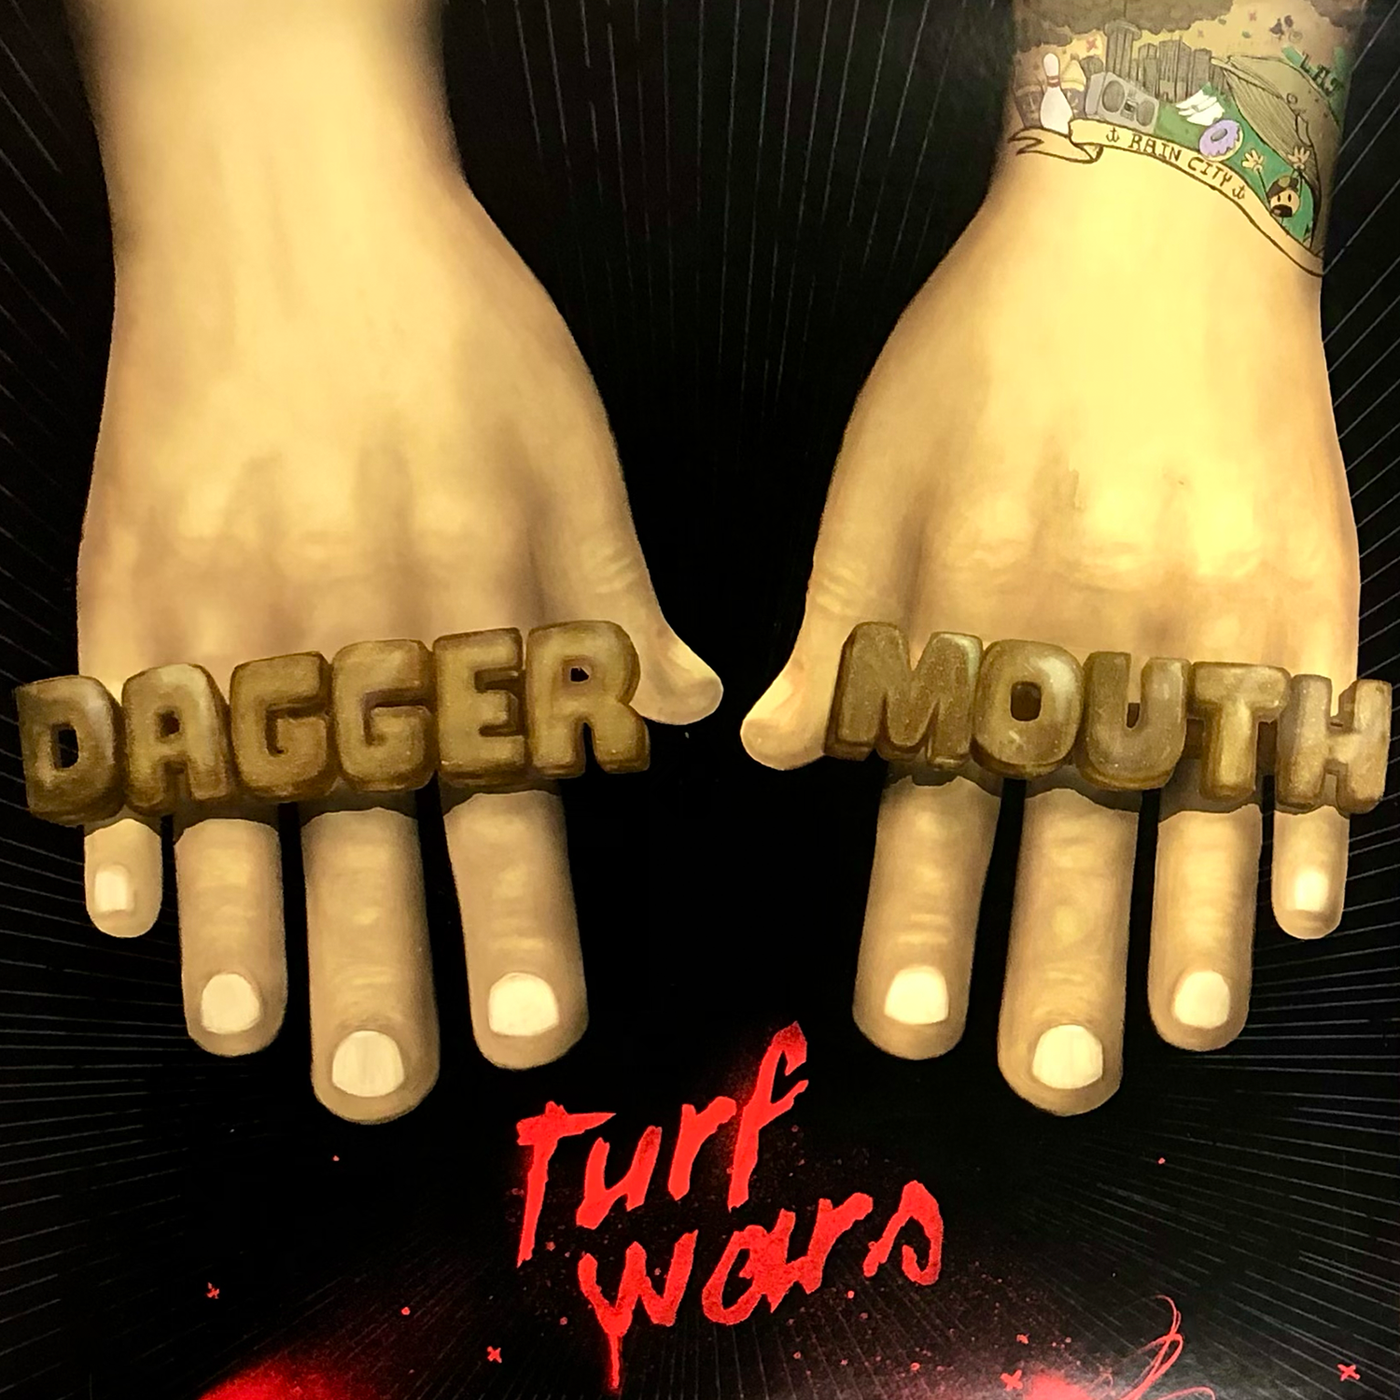 Daggermouth - Turf Wars | Smartpunk Exclusive